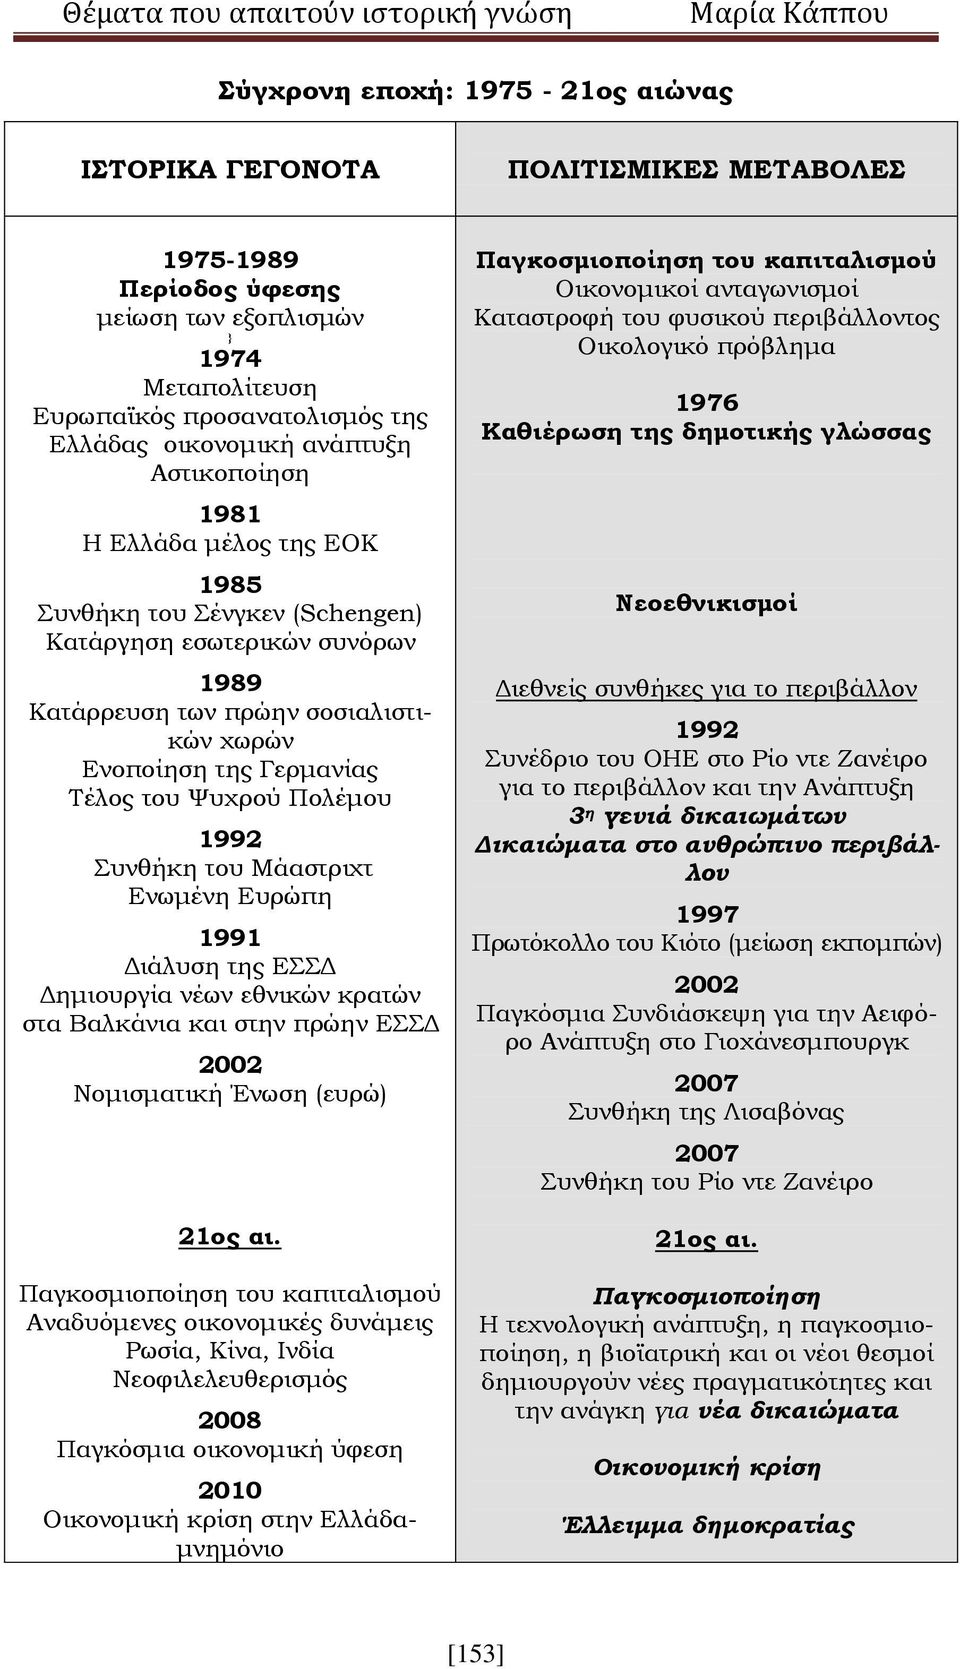 Ψυχρού Πολέμου 1992 Συνθήκη του Μάαστριχτ Ενωμένη Ευρώπη 1991 Διάλυση της ΕΣΣΔ Δημιουργία νέων εθνικών κρατών στα Βαλκάνια και στην πρώην ΕΣΣΔ 2002 Νομισματική Ένωση (ευρώ) 21ος αι.